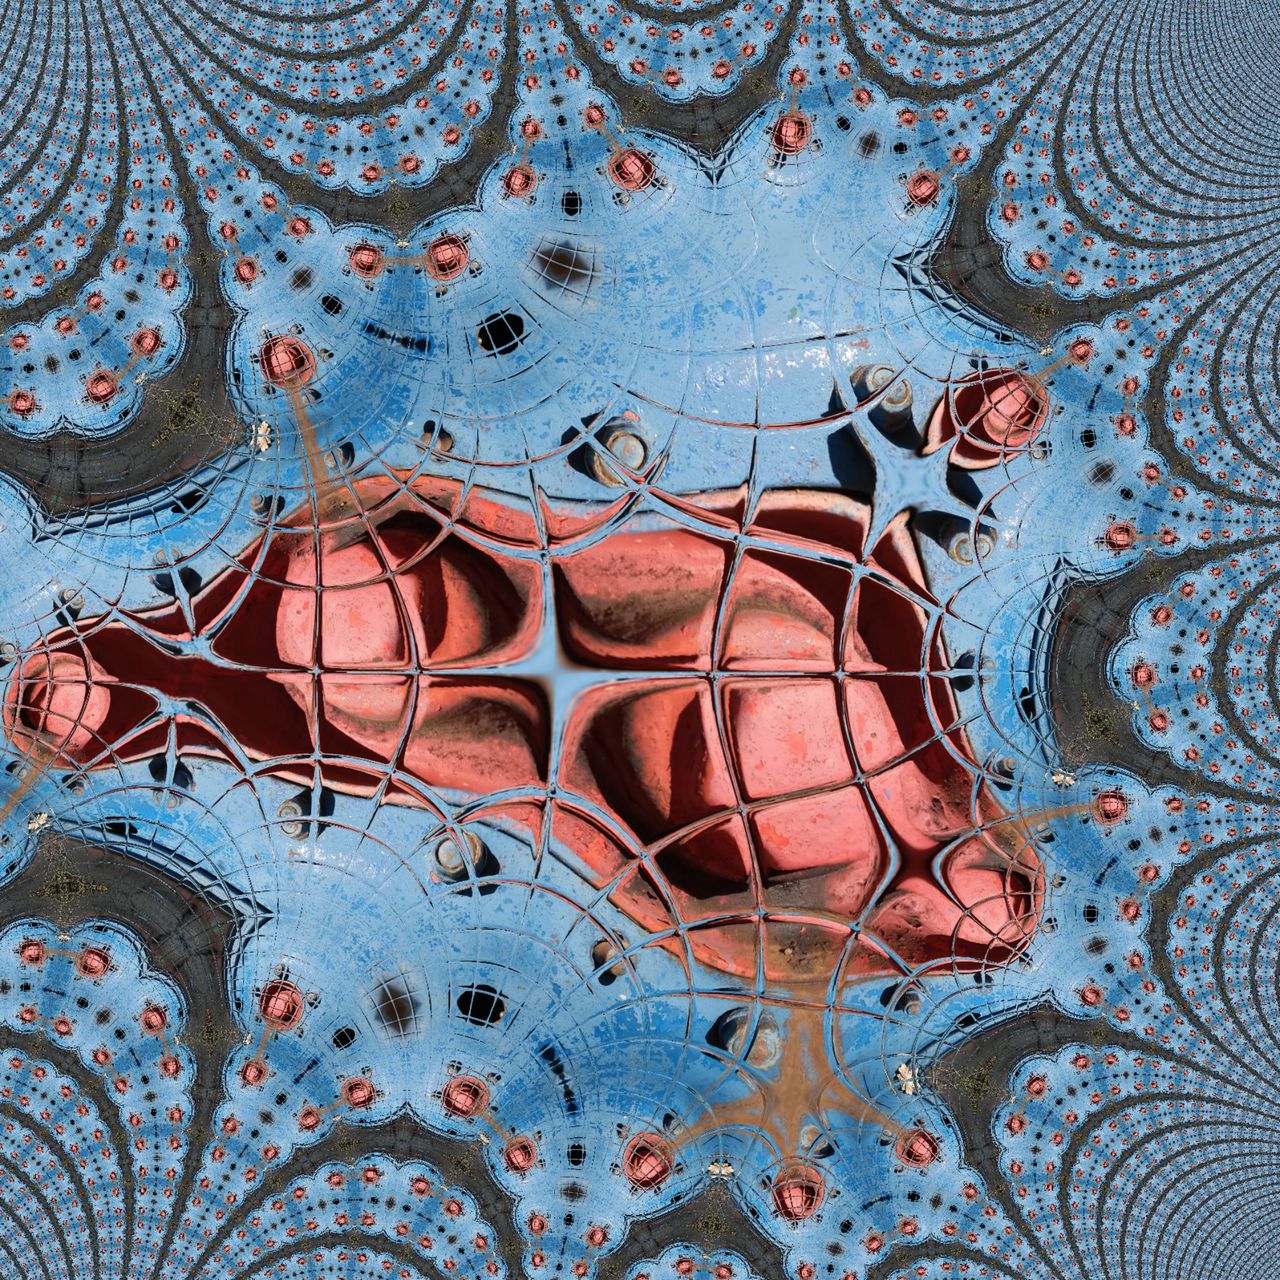 Blau-rotes abstraktes Bild, dessen exzentrische Anordnung in der Mitte eine Art Spinnennetzstruktur zeigt, ähnlich der Spiderman-Grafiken. Gegen den Rand verliert sich die Struktur in immer kleiner werdenden Einheiten.